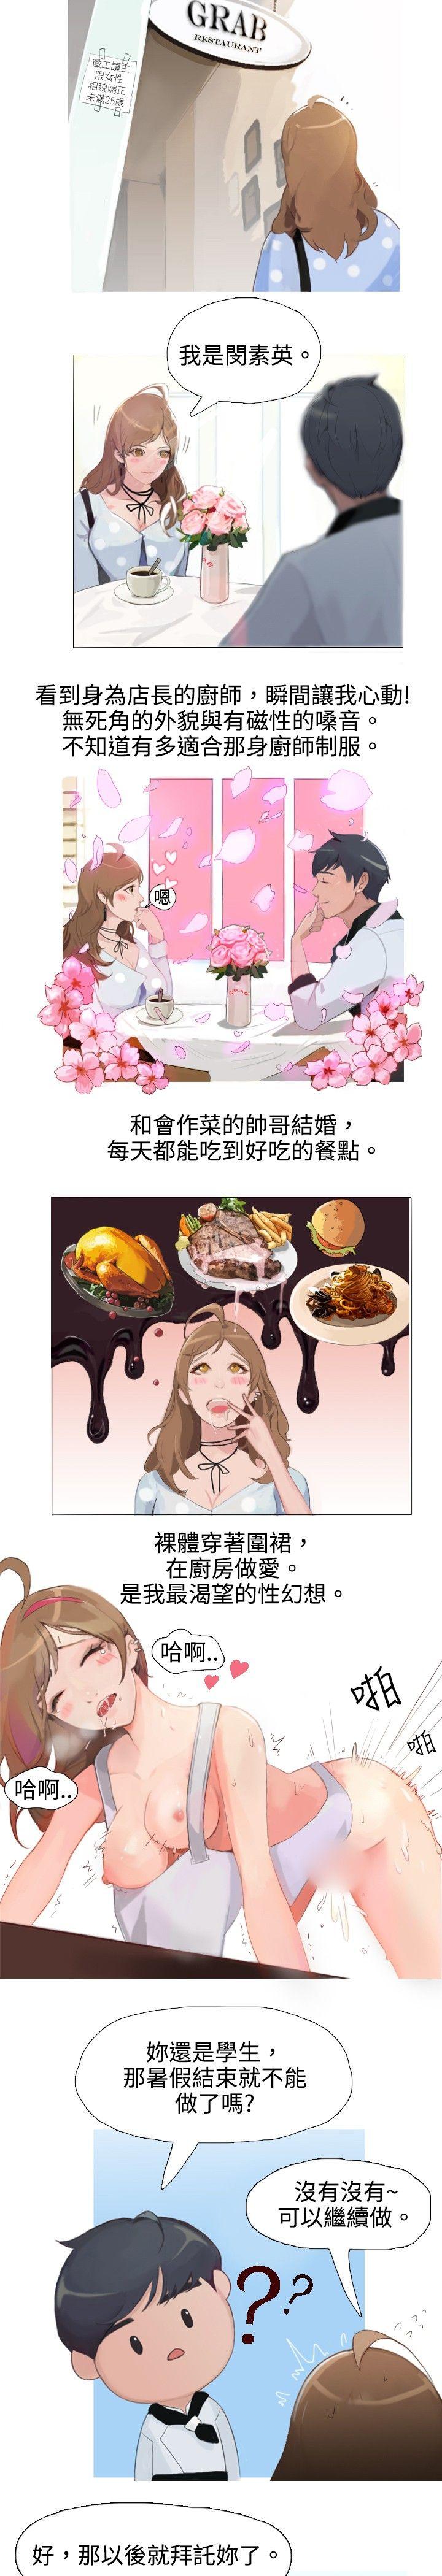 韩国污漫画 秘密Story 与型男主厨的花癡故事(上) 2